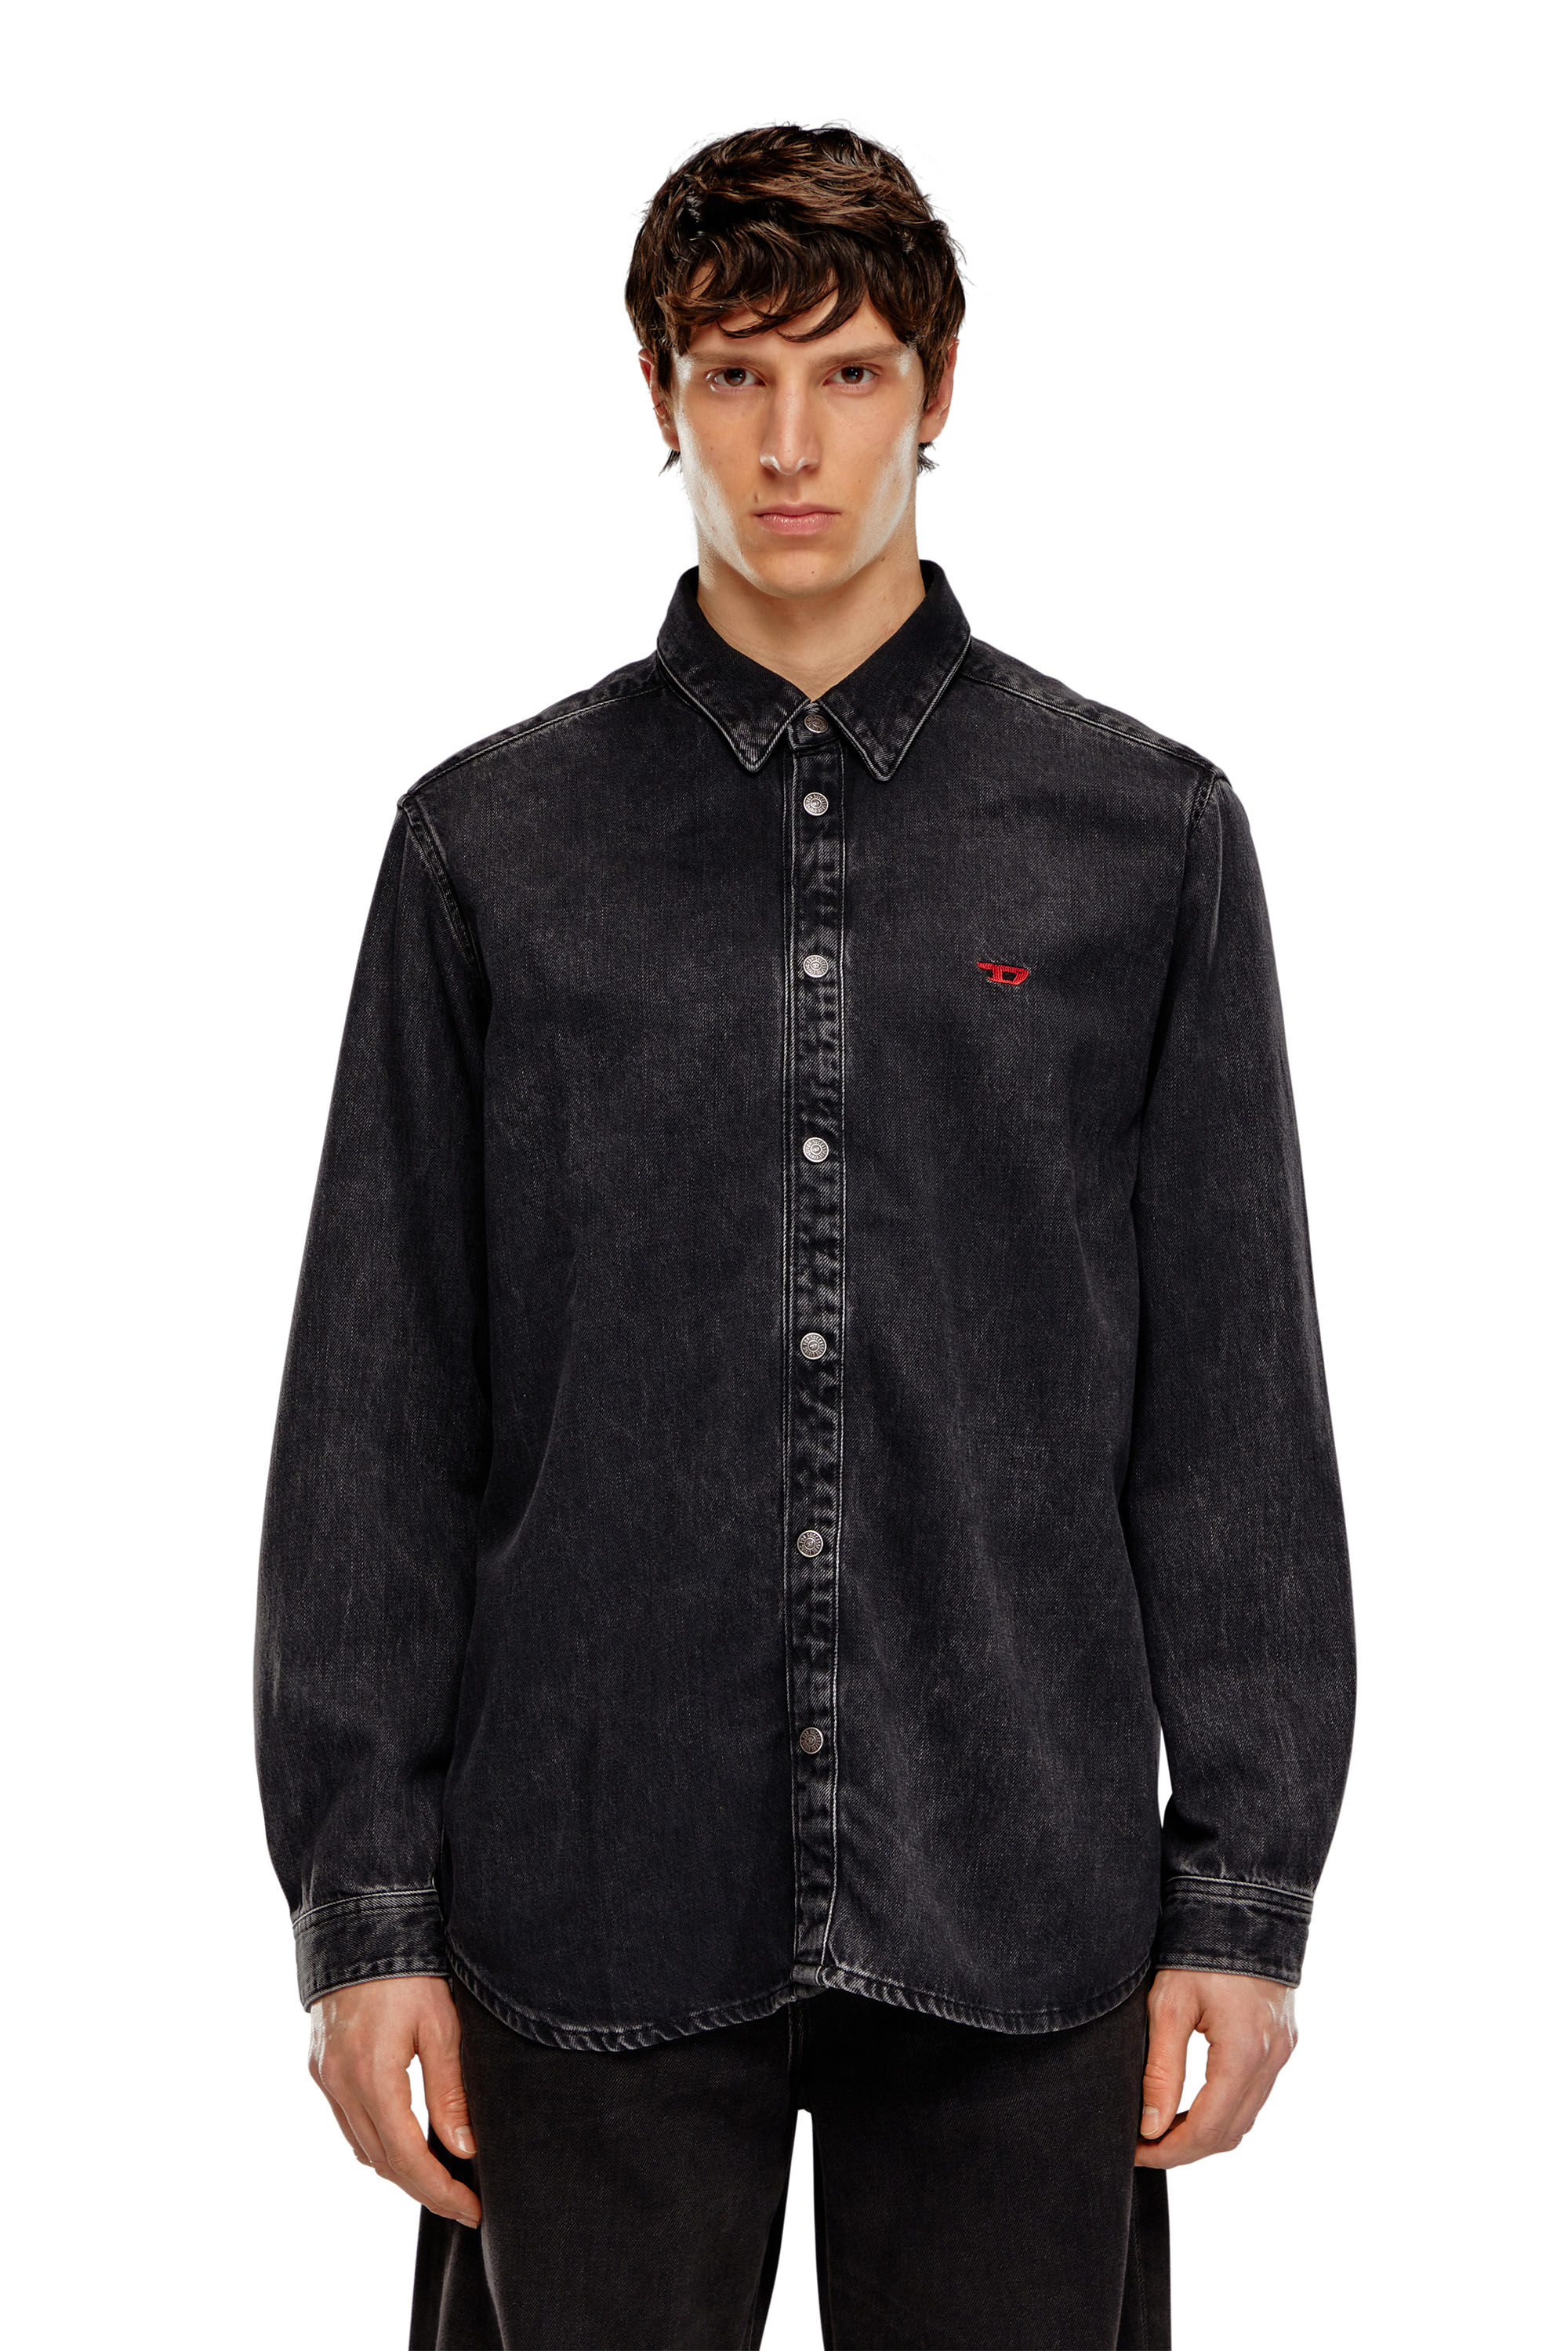 Diesel - D-SIMPLY, Man Shirt in Tencel denim in Black - Image 5